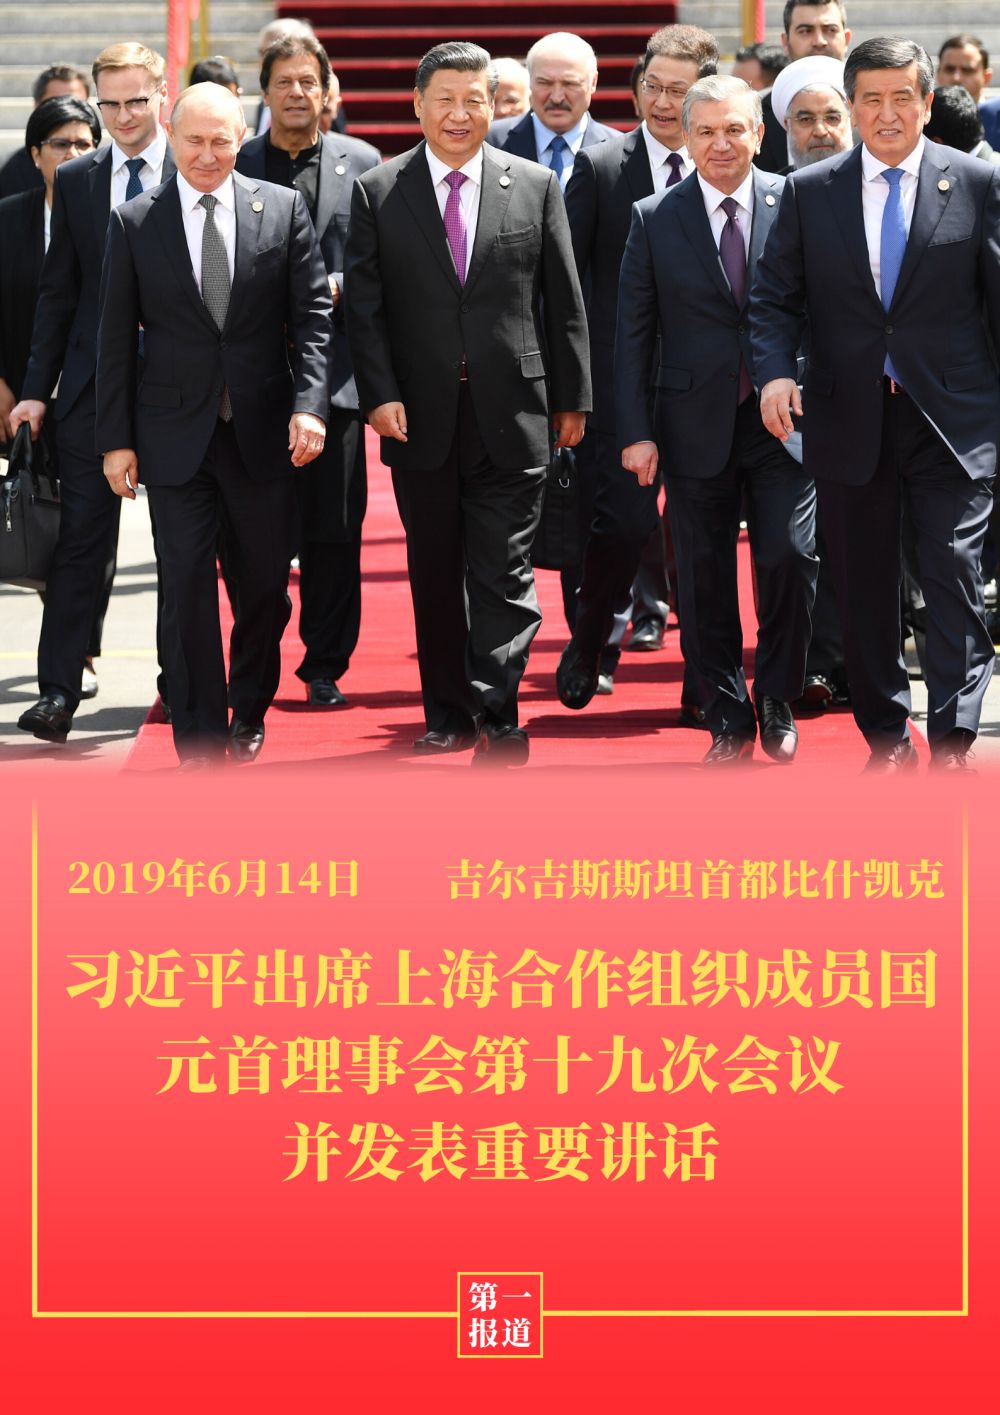 第一报道 | 重温习主席“双峰会”讲话 感受中国智慧的时代力量